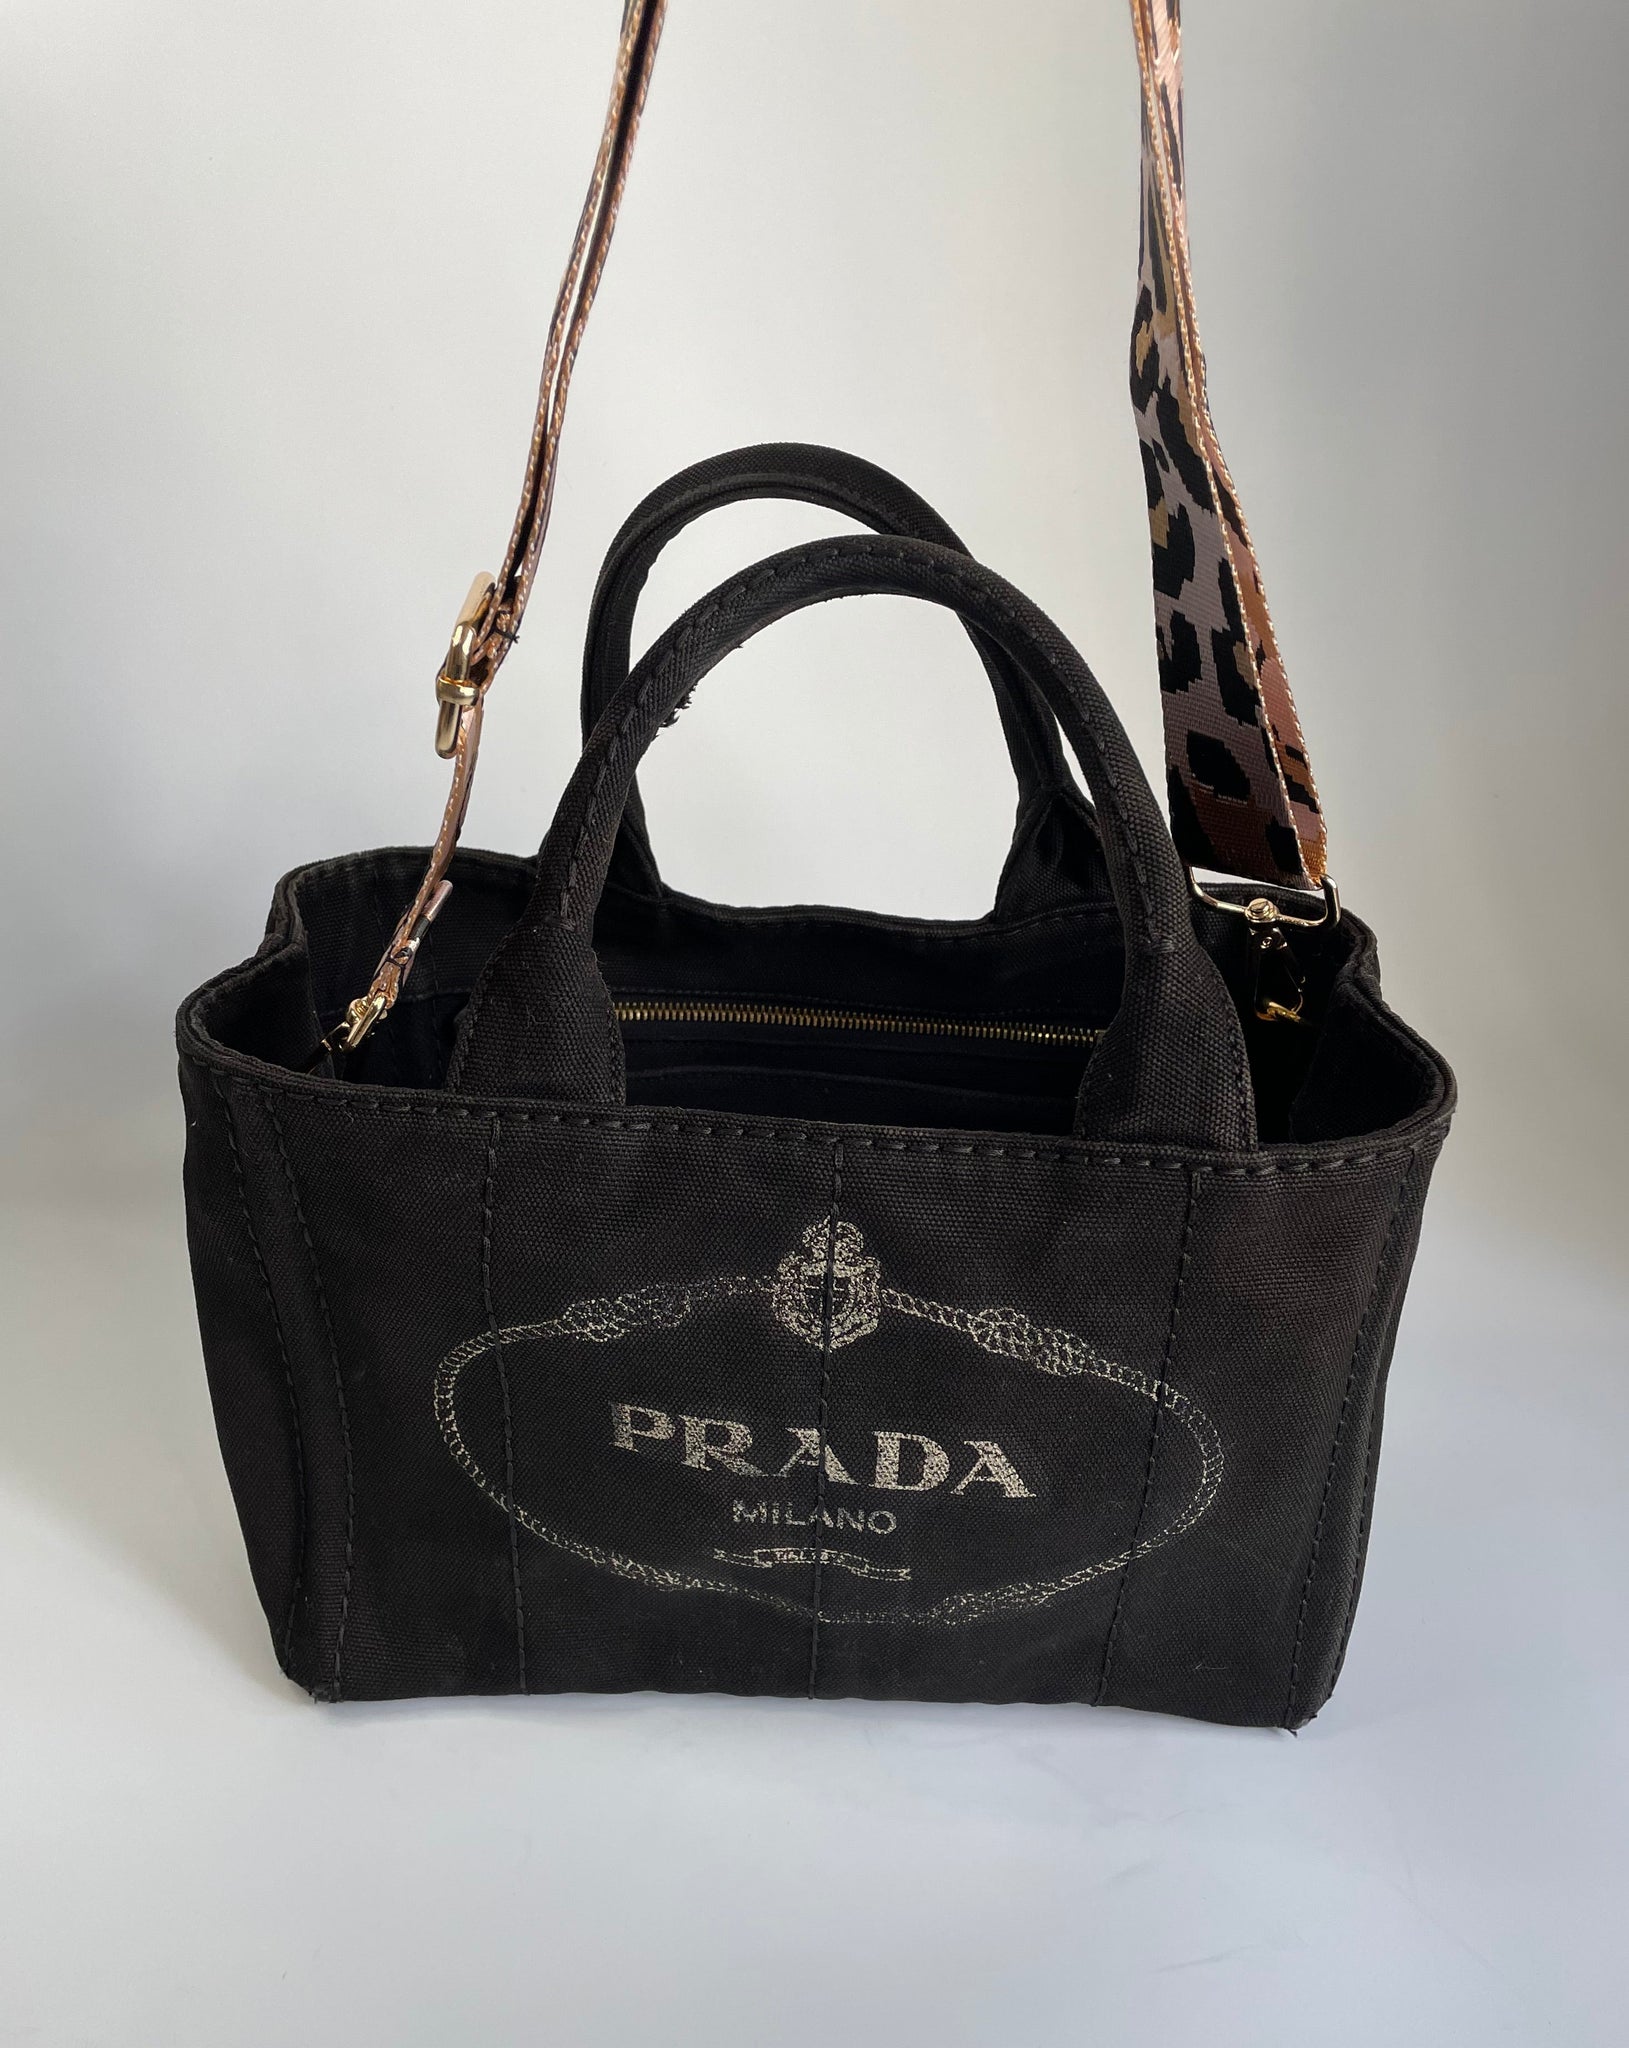 Prada 2way Convertible Tote Bag